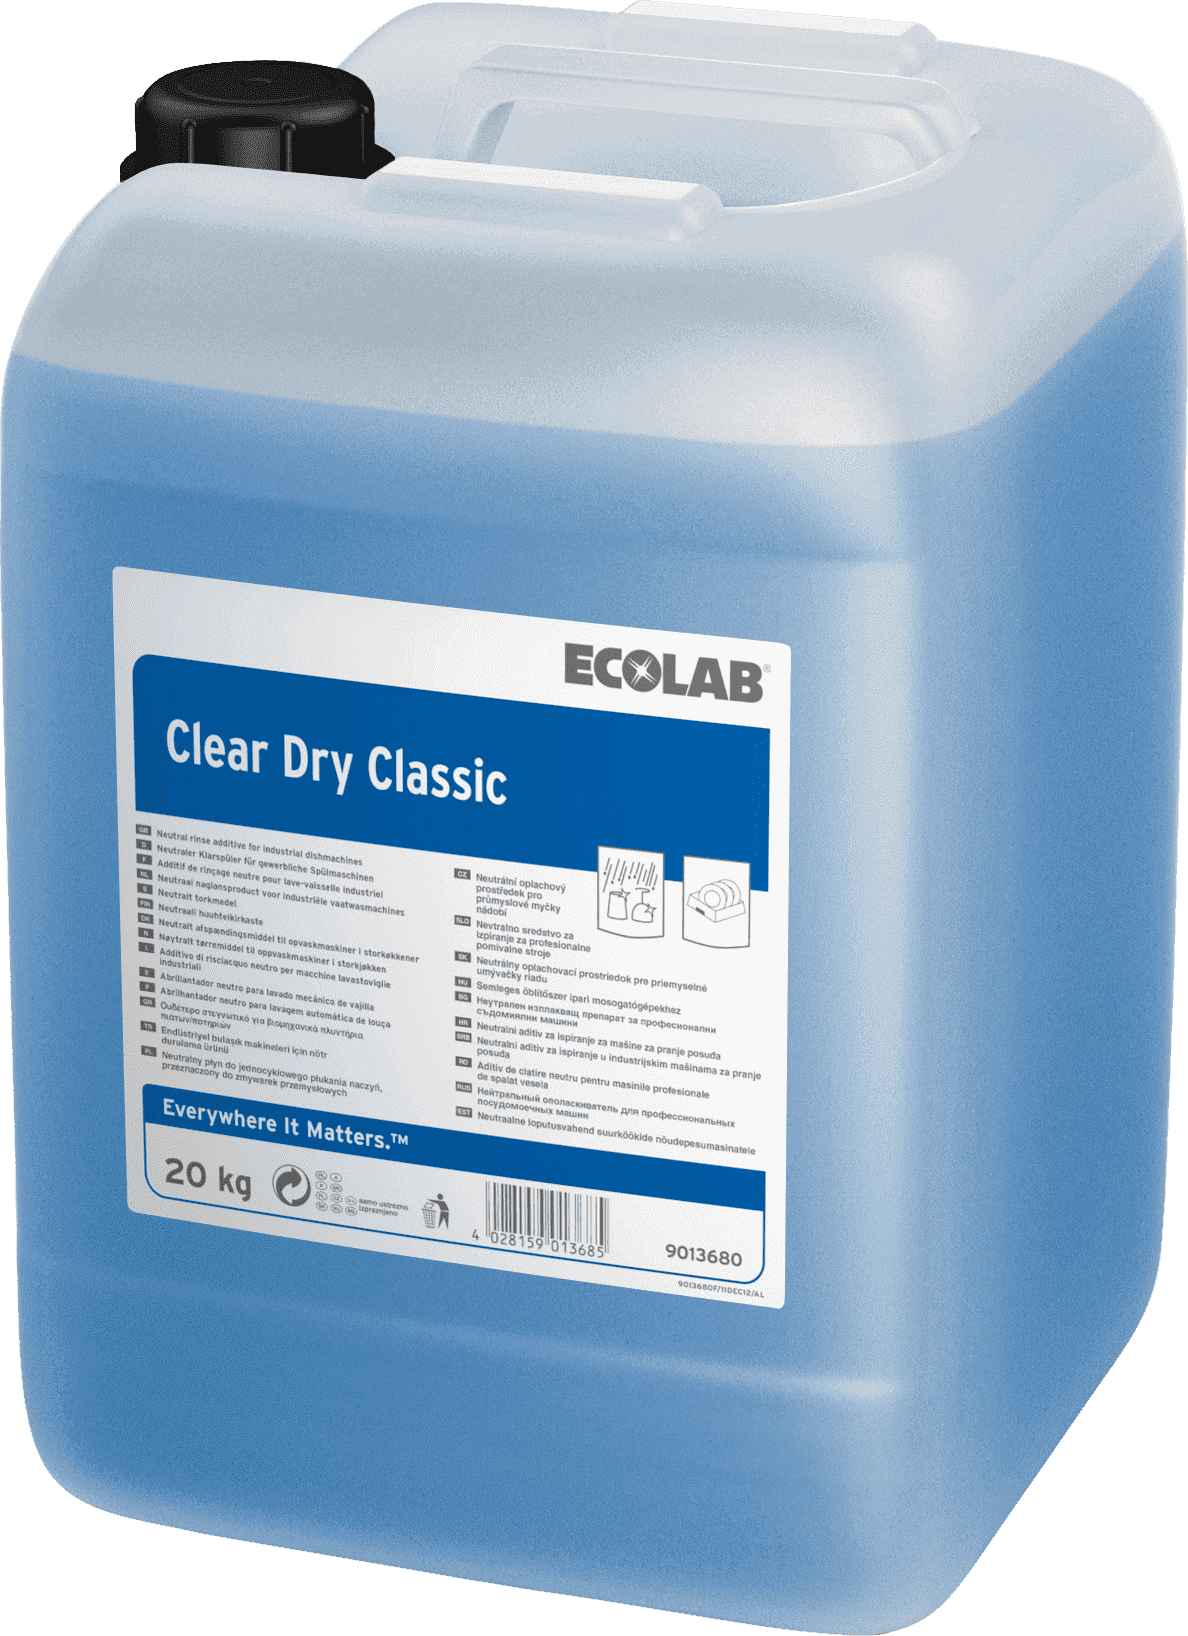 Ecolab Clear Dry Classic средство для ополаскивания посуды в посудомоечной машине, Клингард